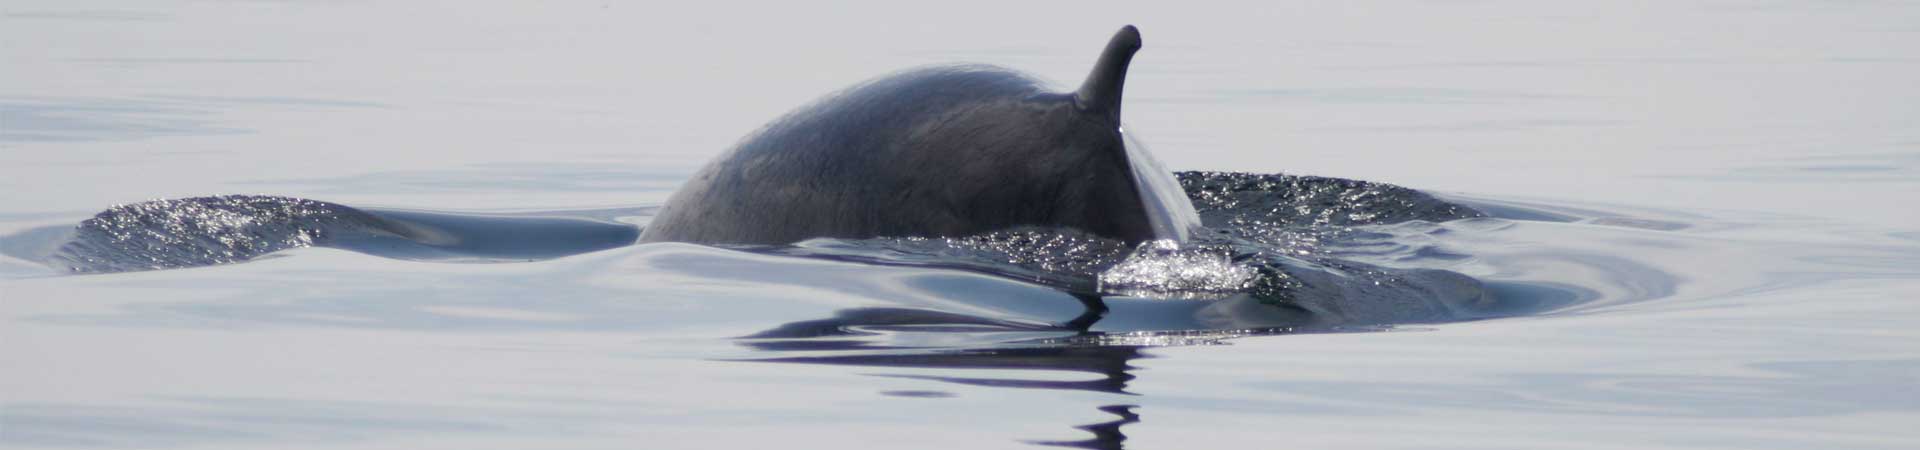 Minke whale dorsal fin at sea surface